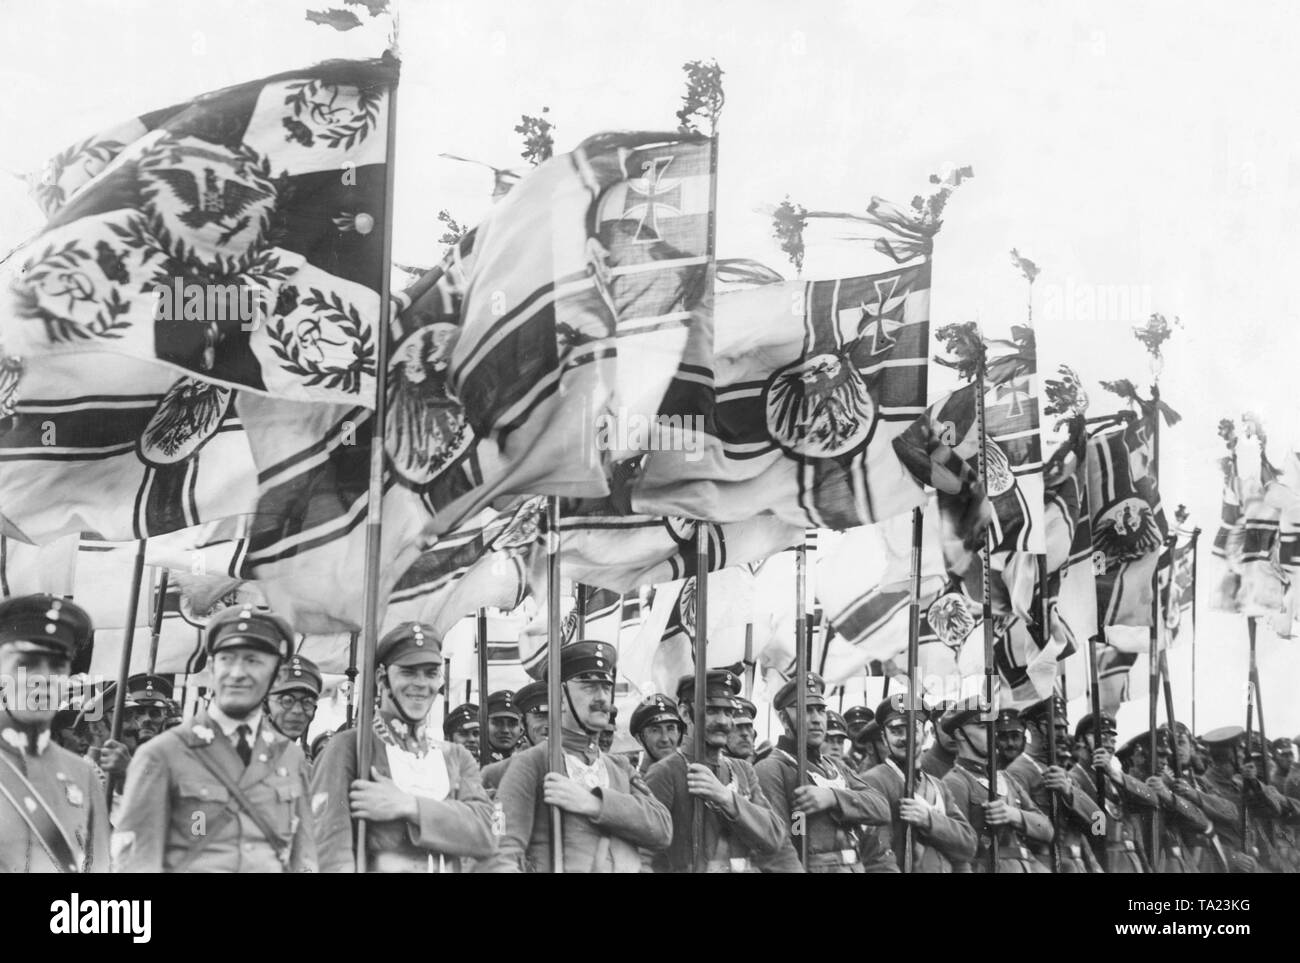 Eine Fahne auf einer Parade auf dem Tempelhofer Feld in Berlin. Viele tragen eine Reichskriegsflagge mit Ihnen. Stockfoto